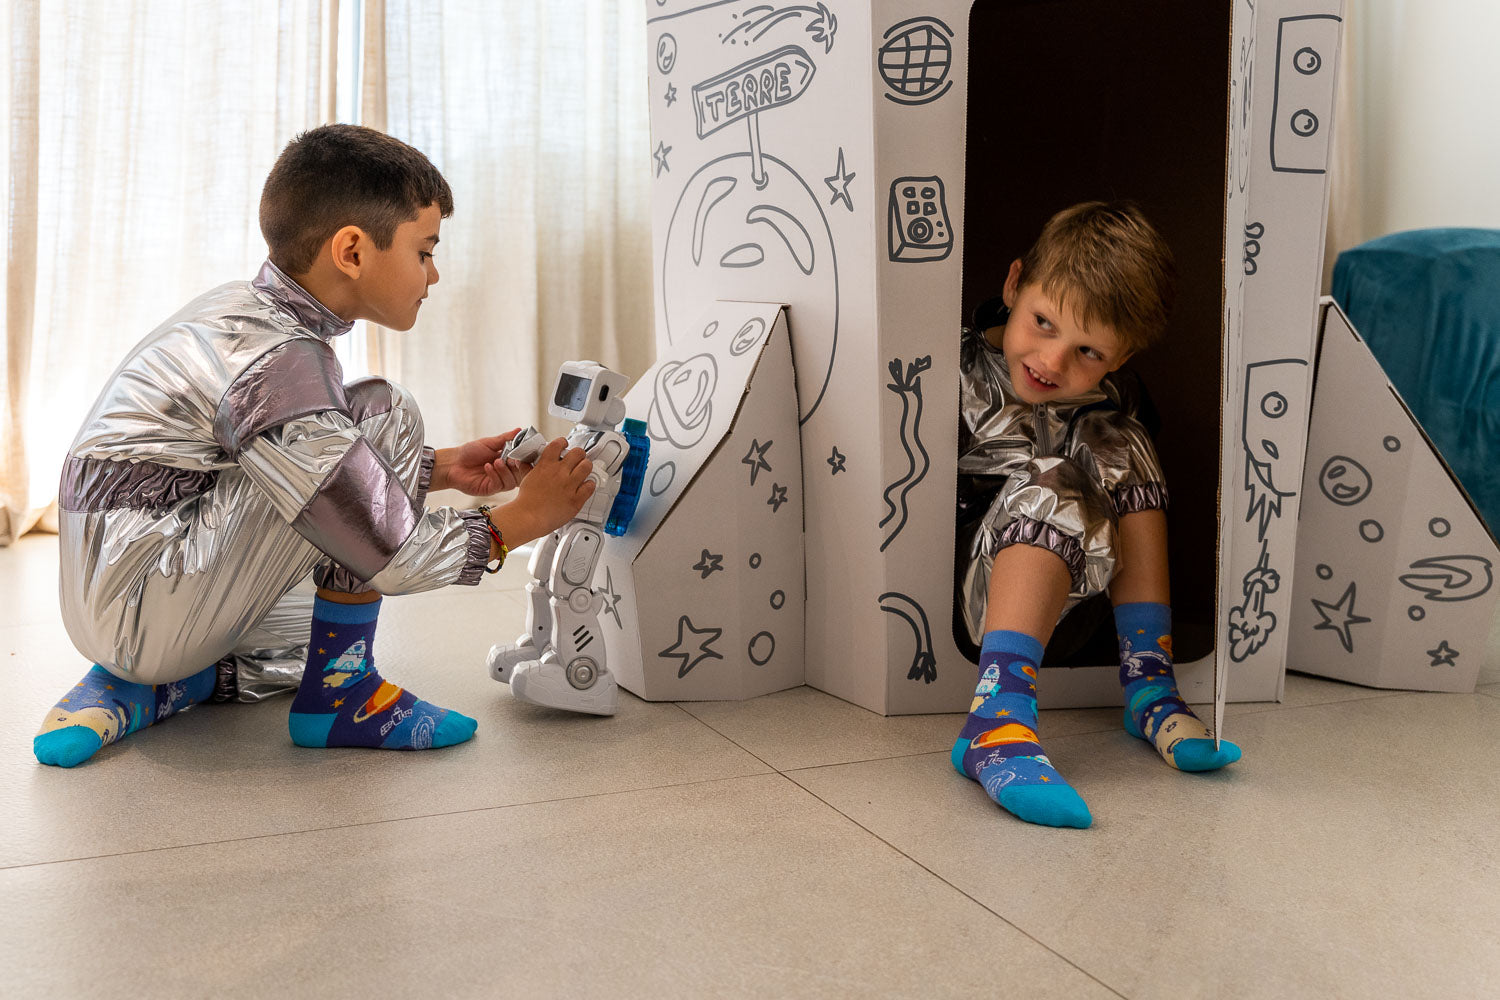 Astronauten Kindersocken, Motivsocken für Kinder, bunte Socken für Jungs und Mädchen auf Sockeläuft.de